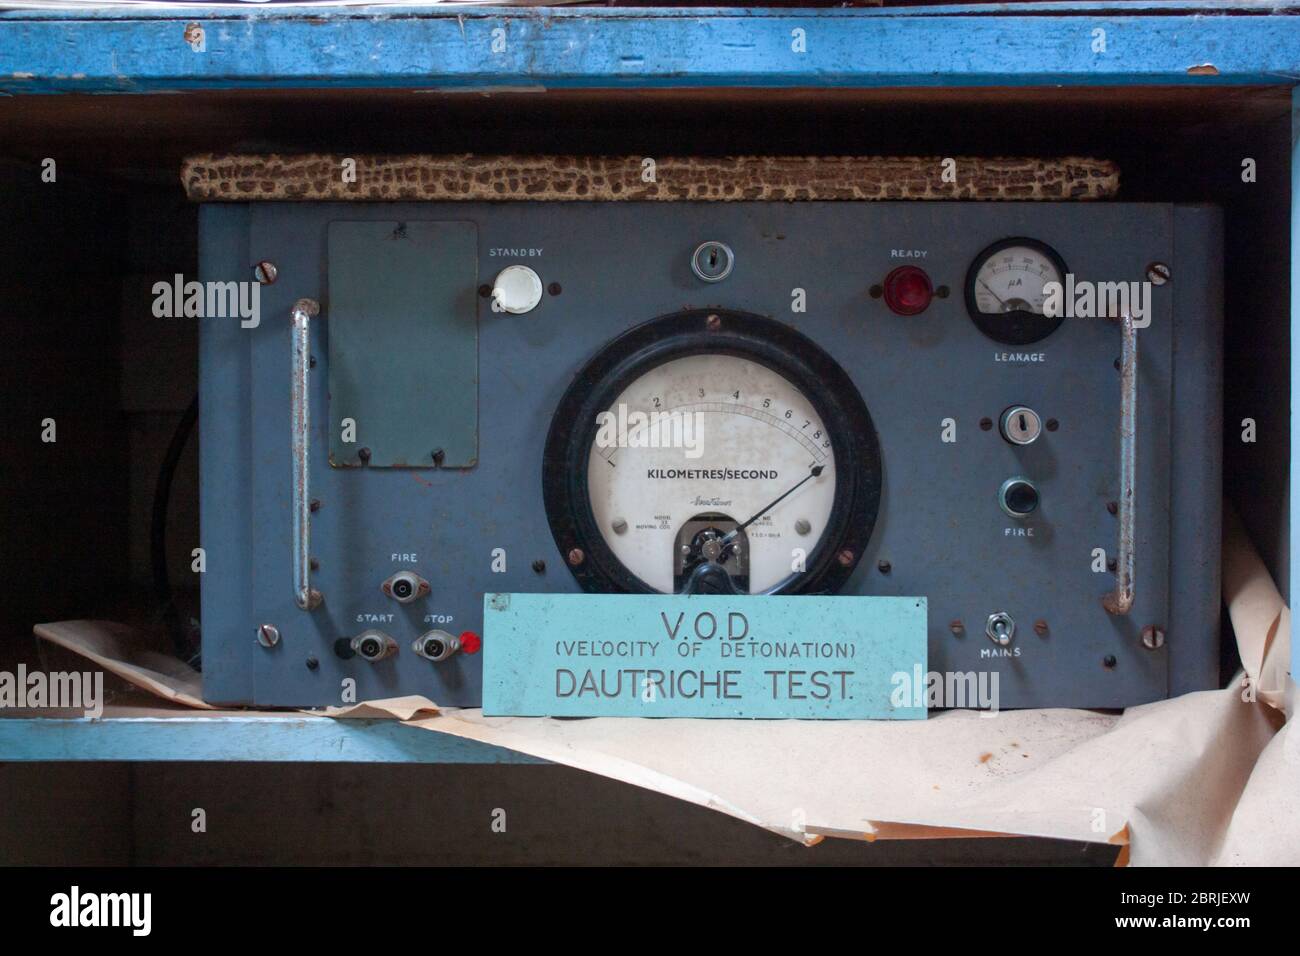 Vitesse de détonation VOD dautriche machine de test dans l'usine Ici/Nobels explosives à Arbiche, Stevenston, Écosse, 2010 Banque D'Images